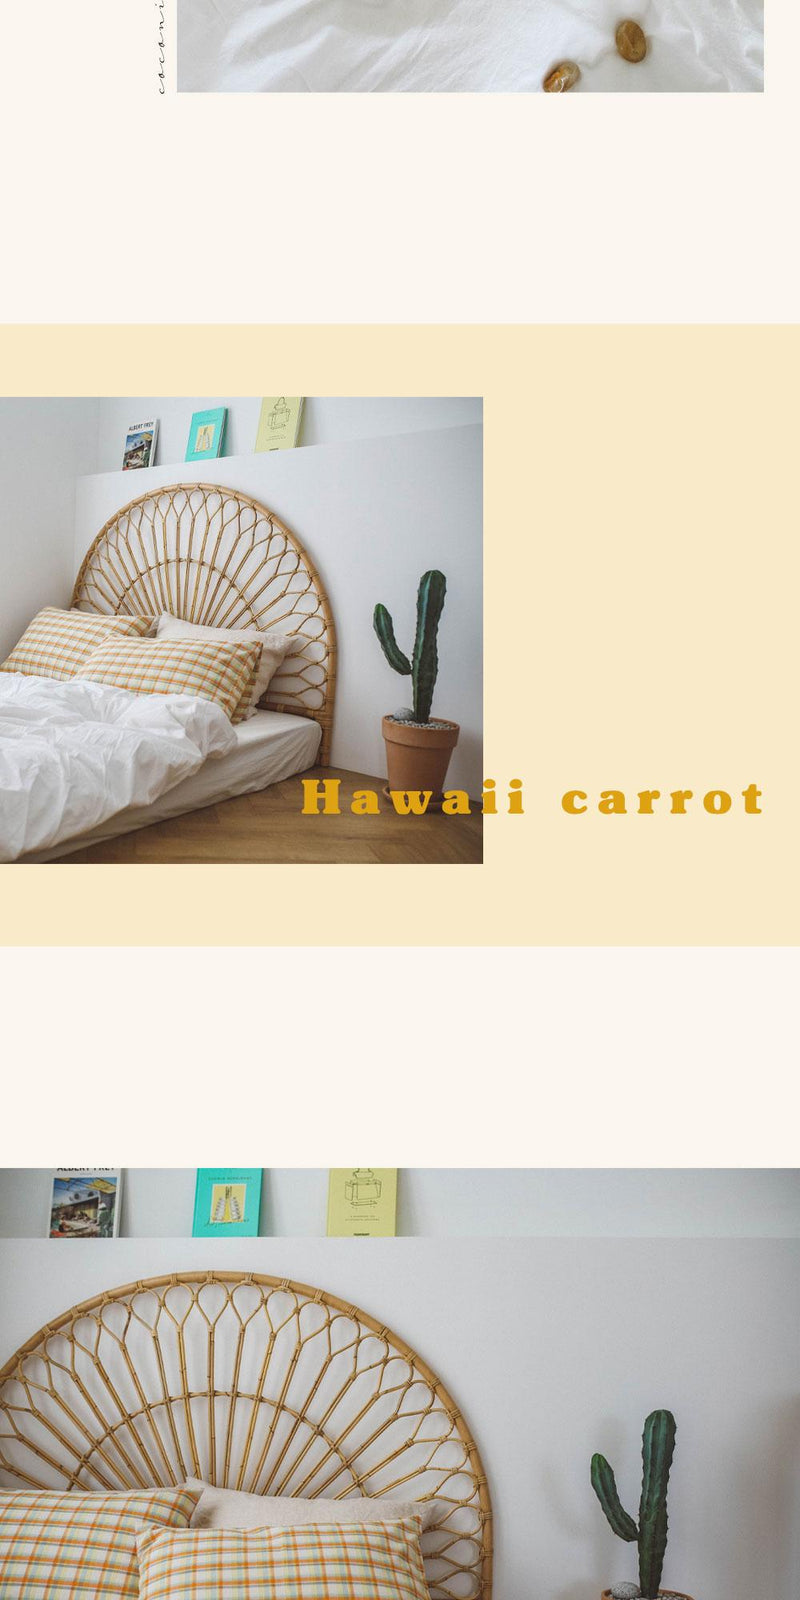 Hawaii carrot pillow cover